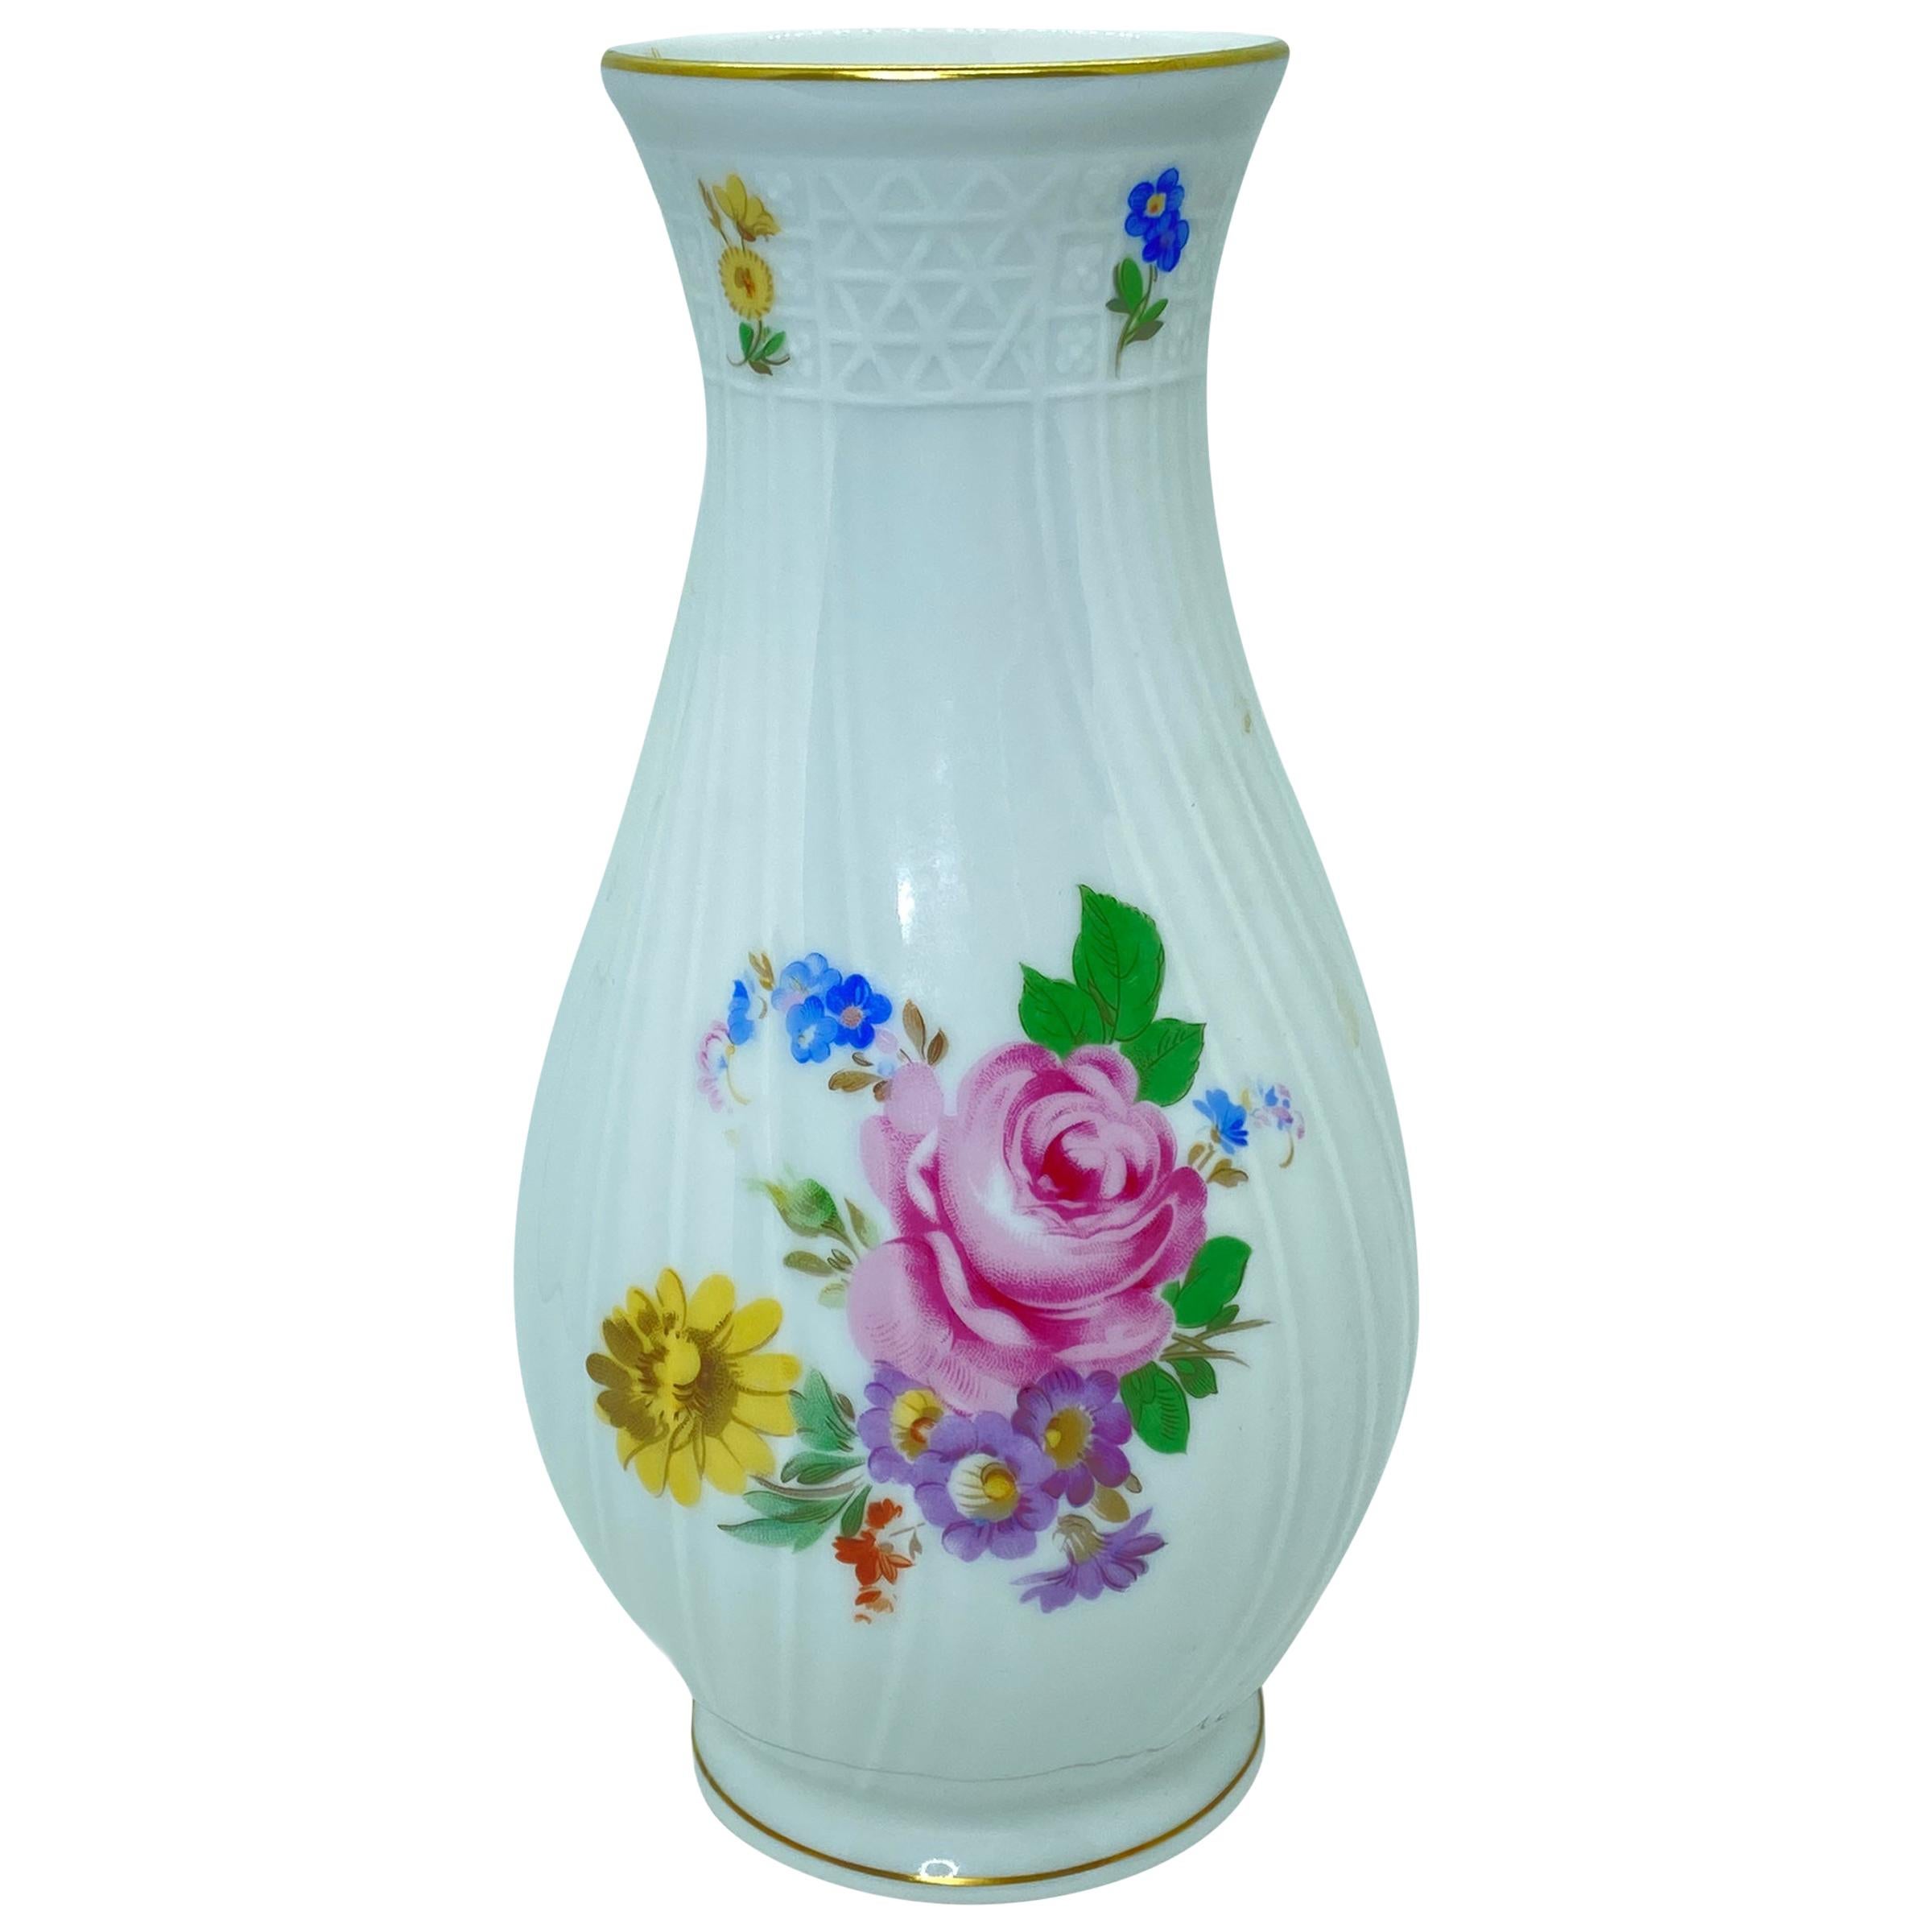 Vintage China Porcelain Vase Hutschenreuther Dresden Floral Decor